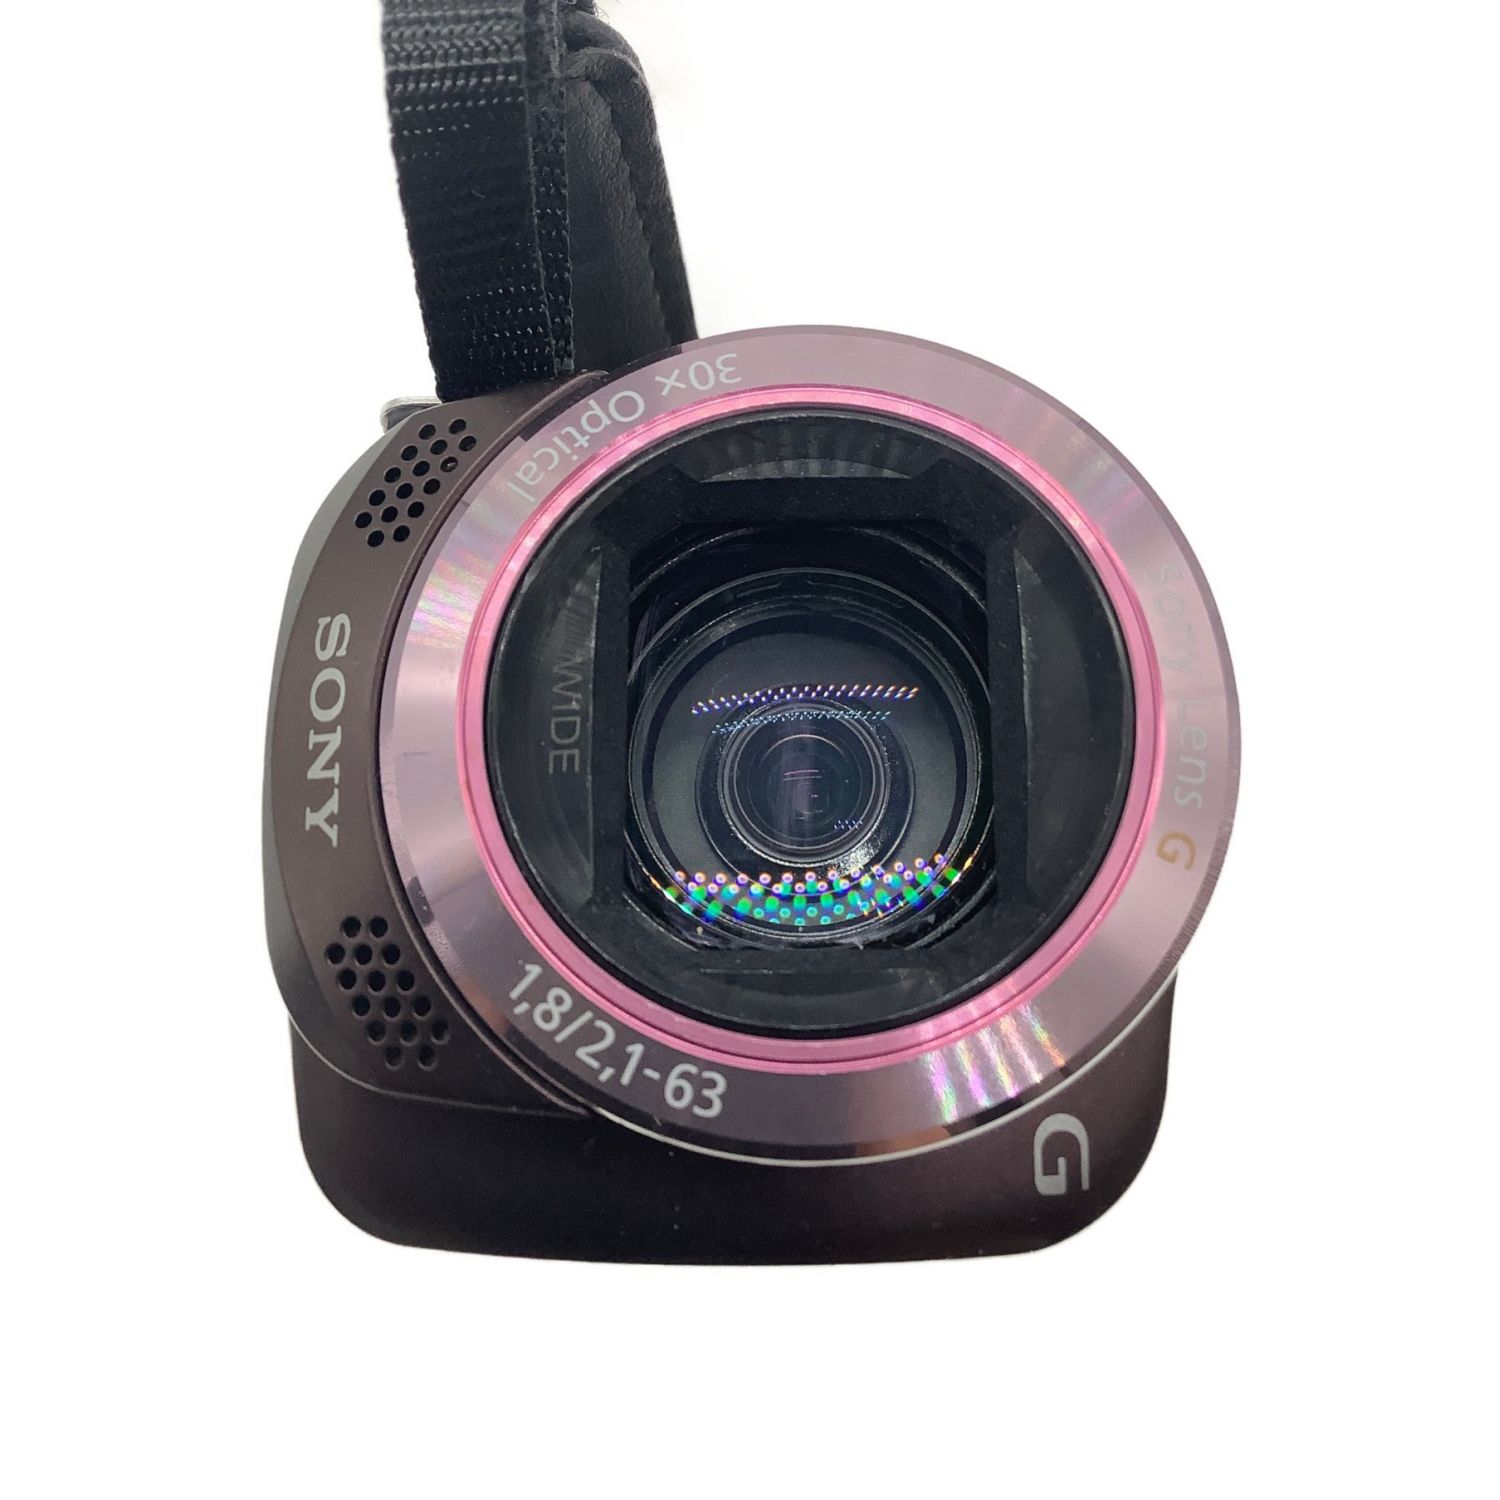 SONY (ソニー) ビデオカメラ 223万画素 内蔵メモリー (32GB) SDカード 